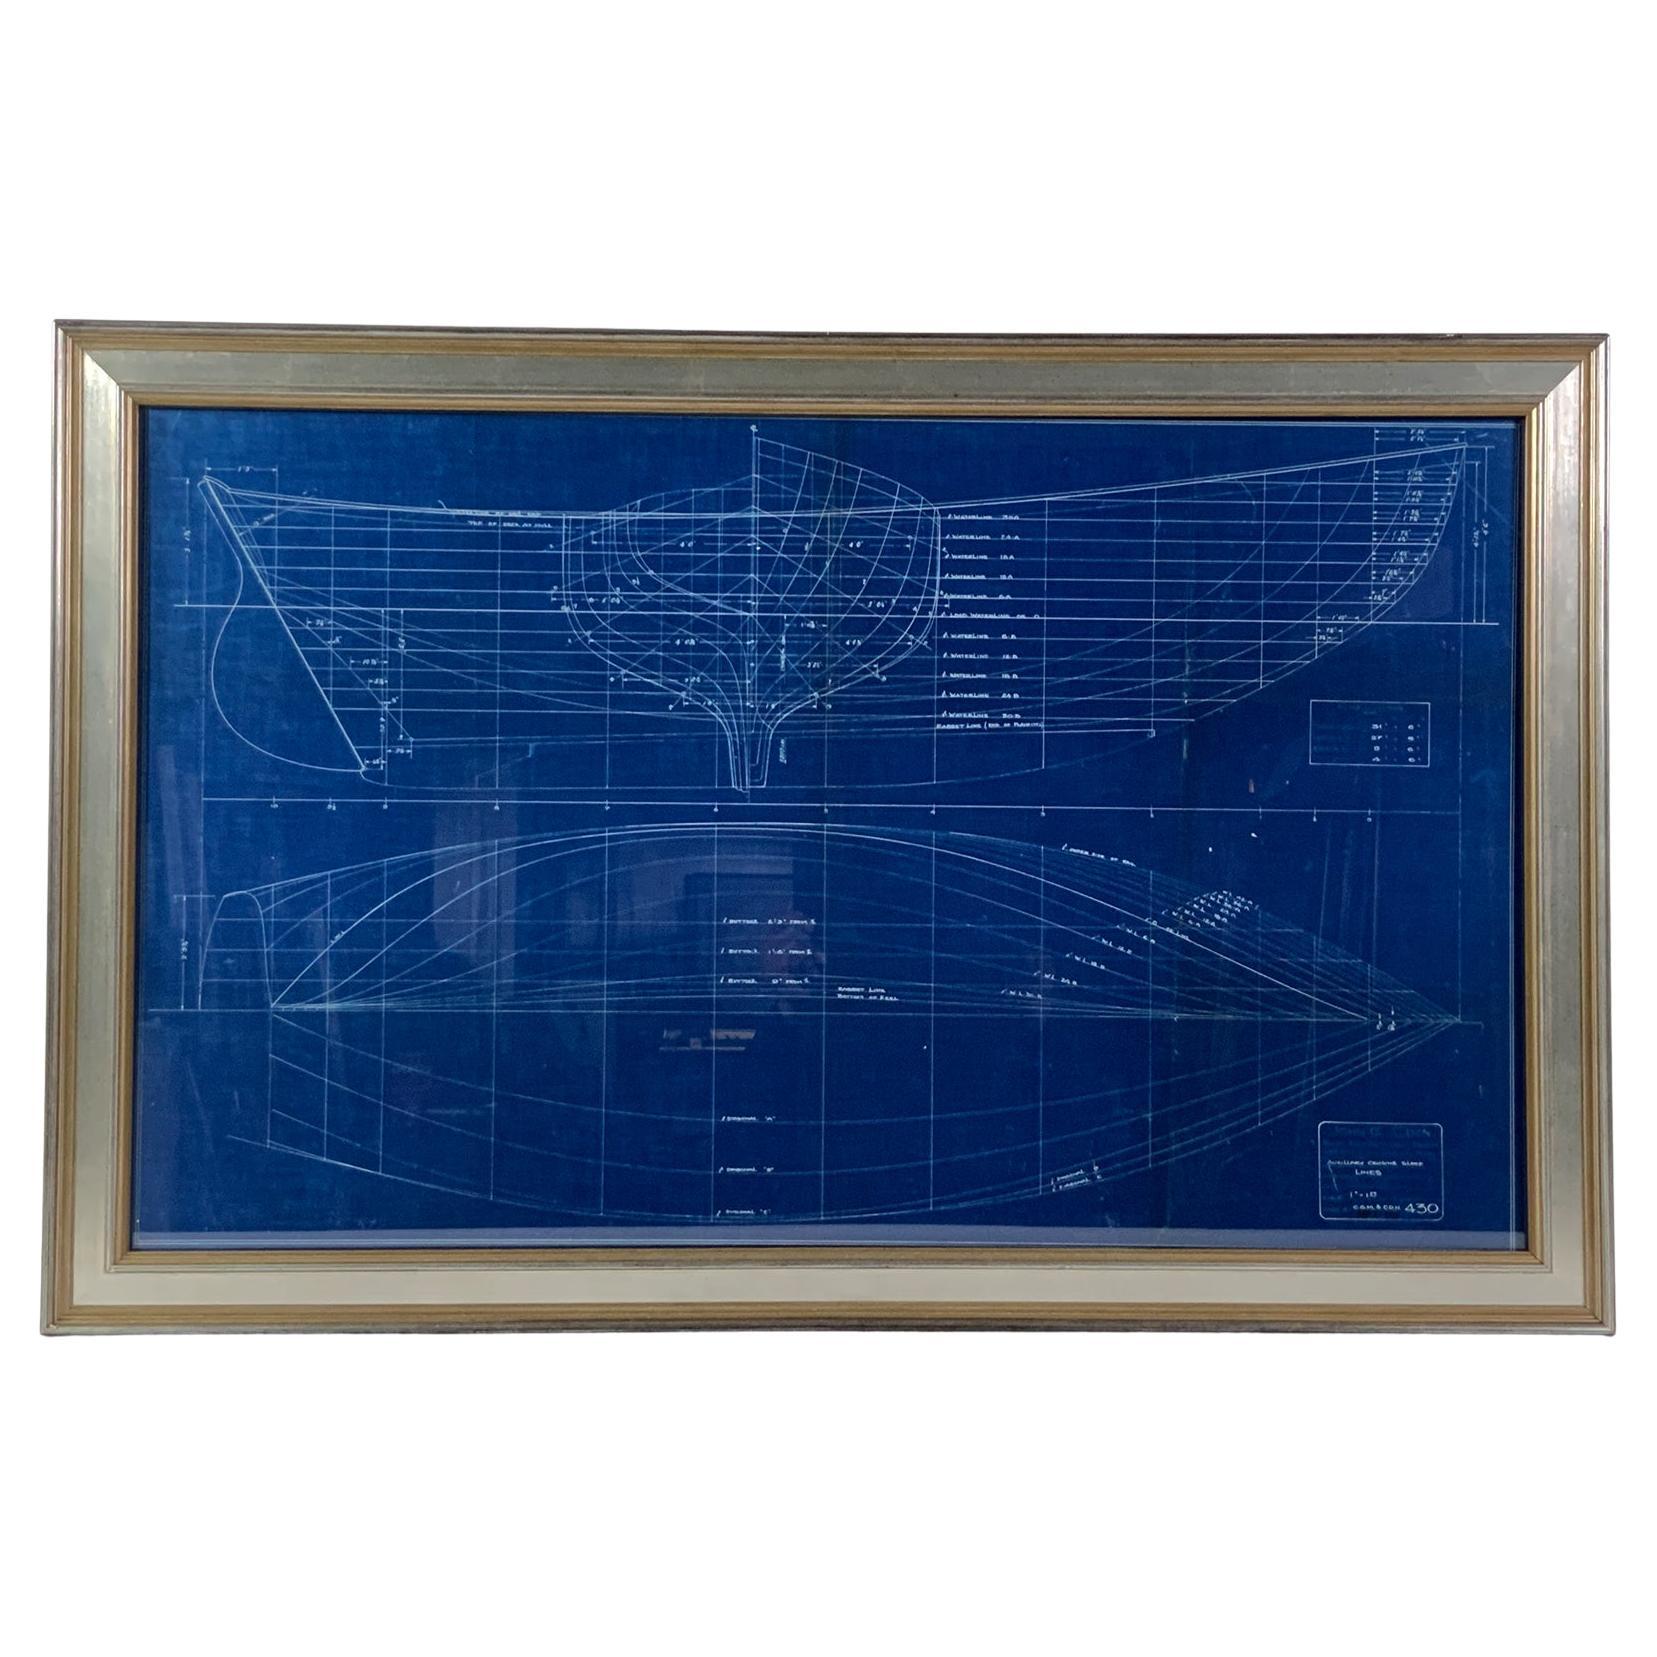 Yacht Blueprint from John Alden, 1931